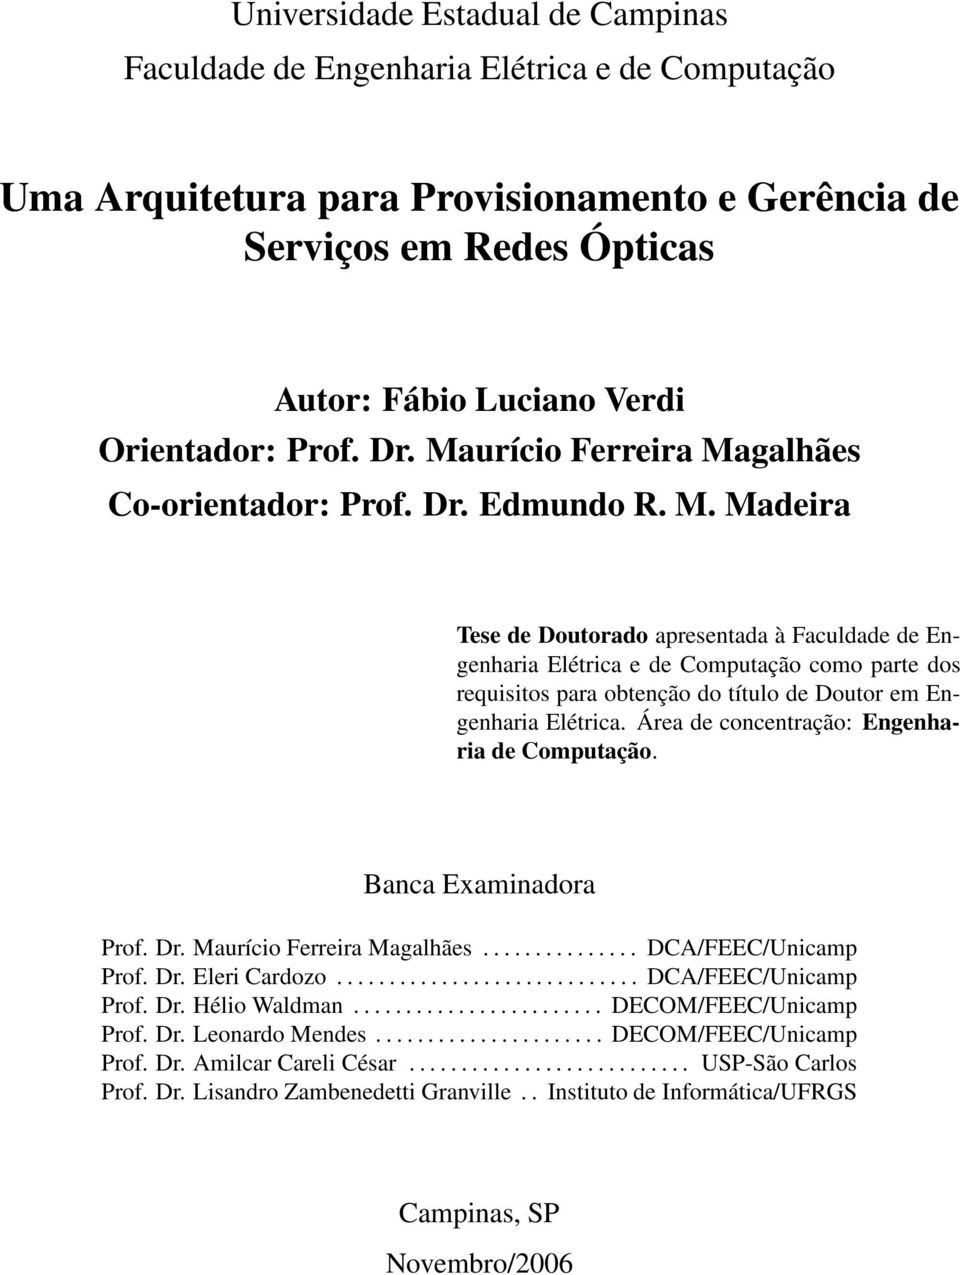 Área de concentração: Engenharia de Computação. Banca Examinadora Prof. Dr. Maurício Ferreira Magalhães............... DCA/FEEC/Unicamp Prof. Dr. Eleri Cardozo............................. DCA/FEEC/Unicamp Prof. Dr. Hélio Waldman.